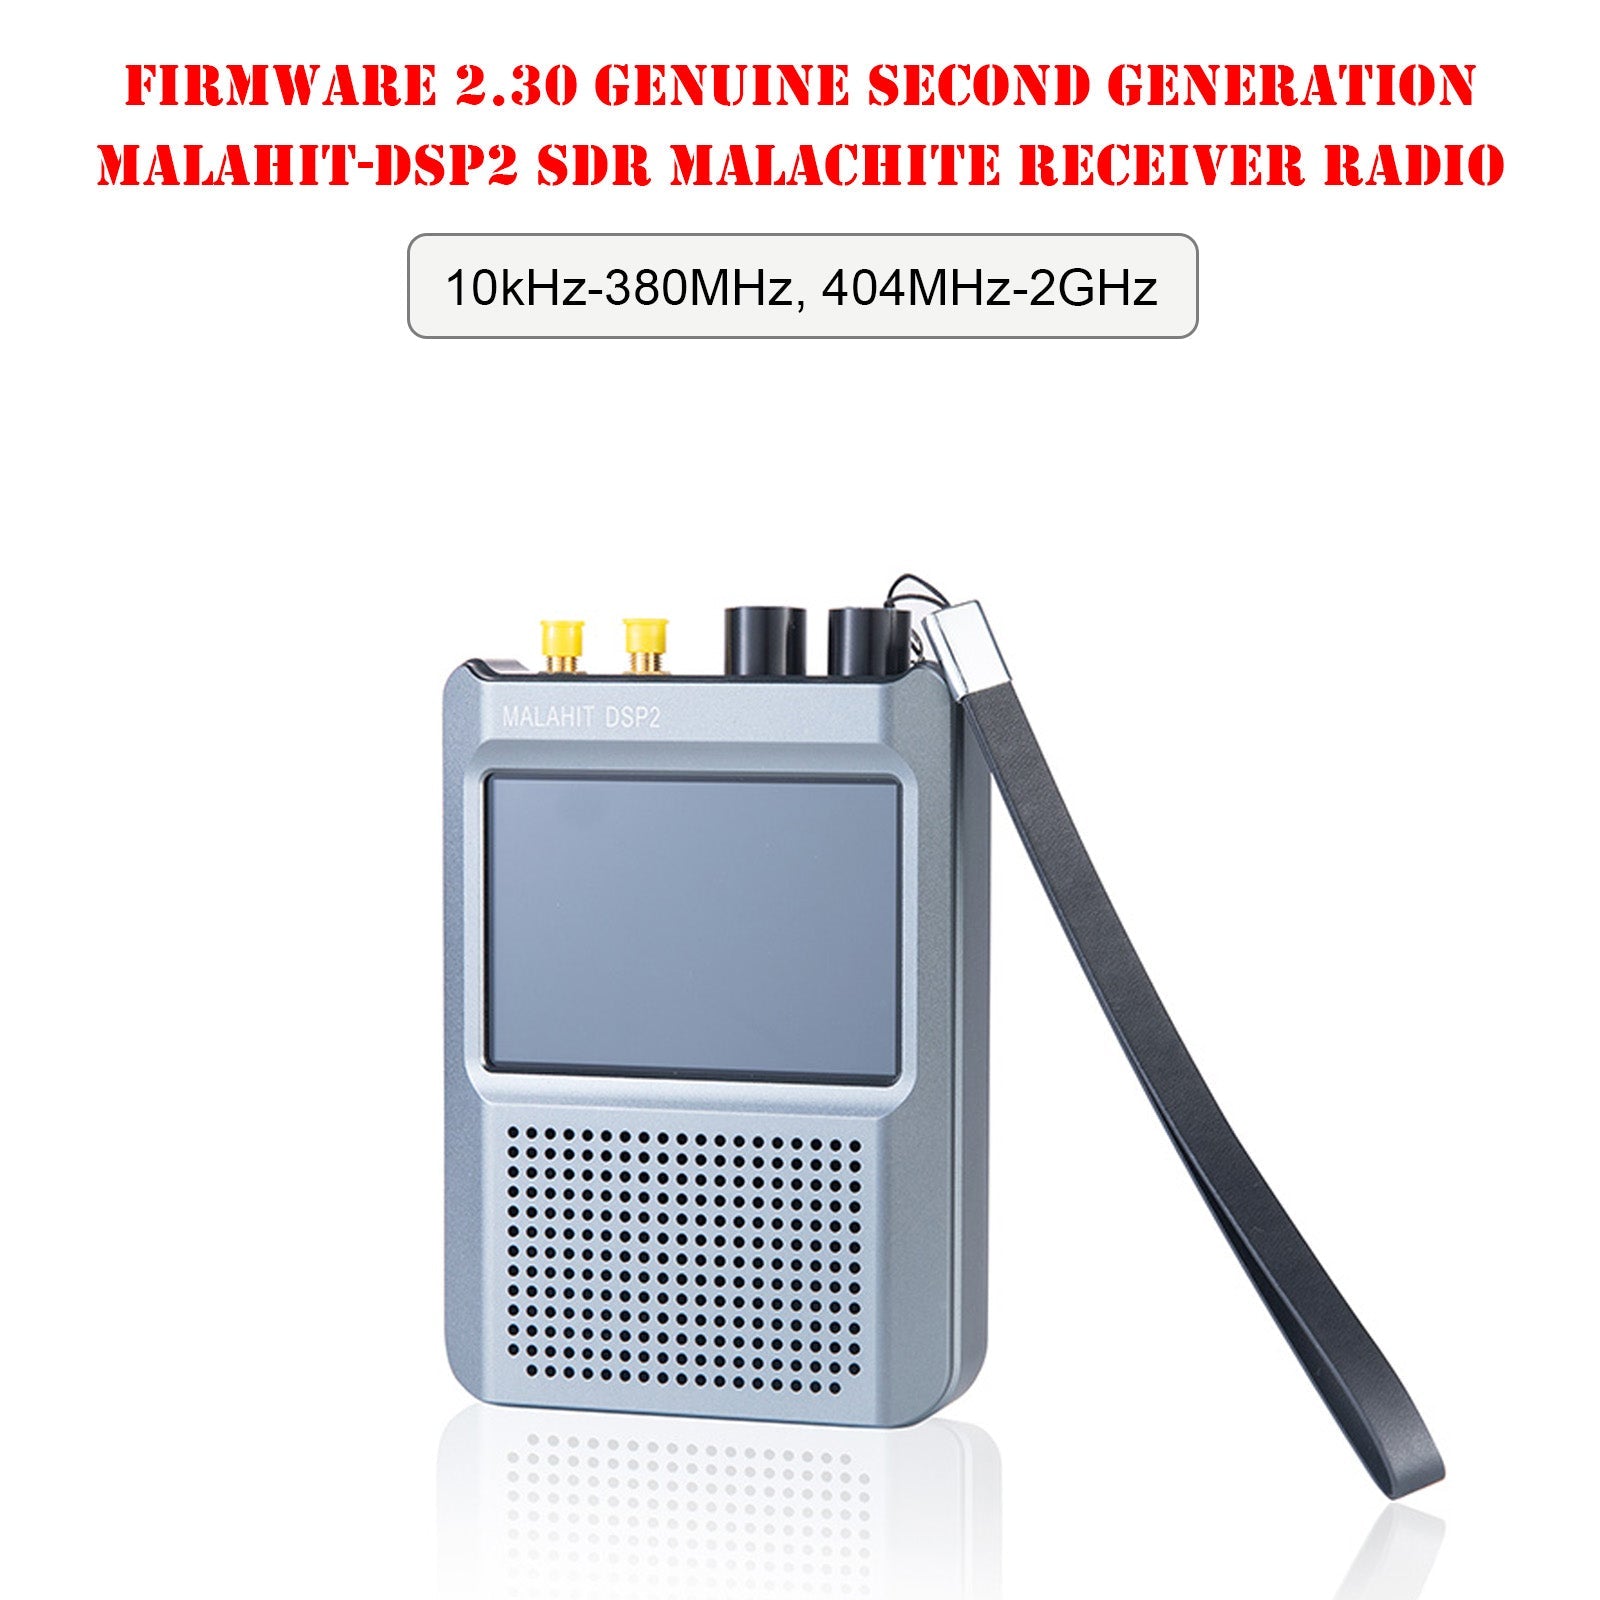 Véritable micrologiciel autorisé 2.30 Radio récepteur Malahit-DSP2 de deuxième génération